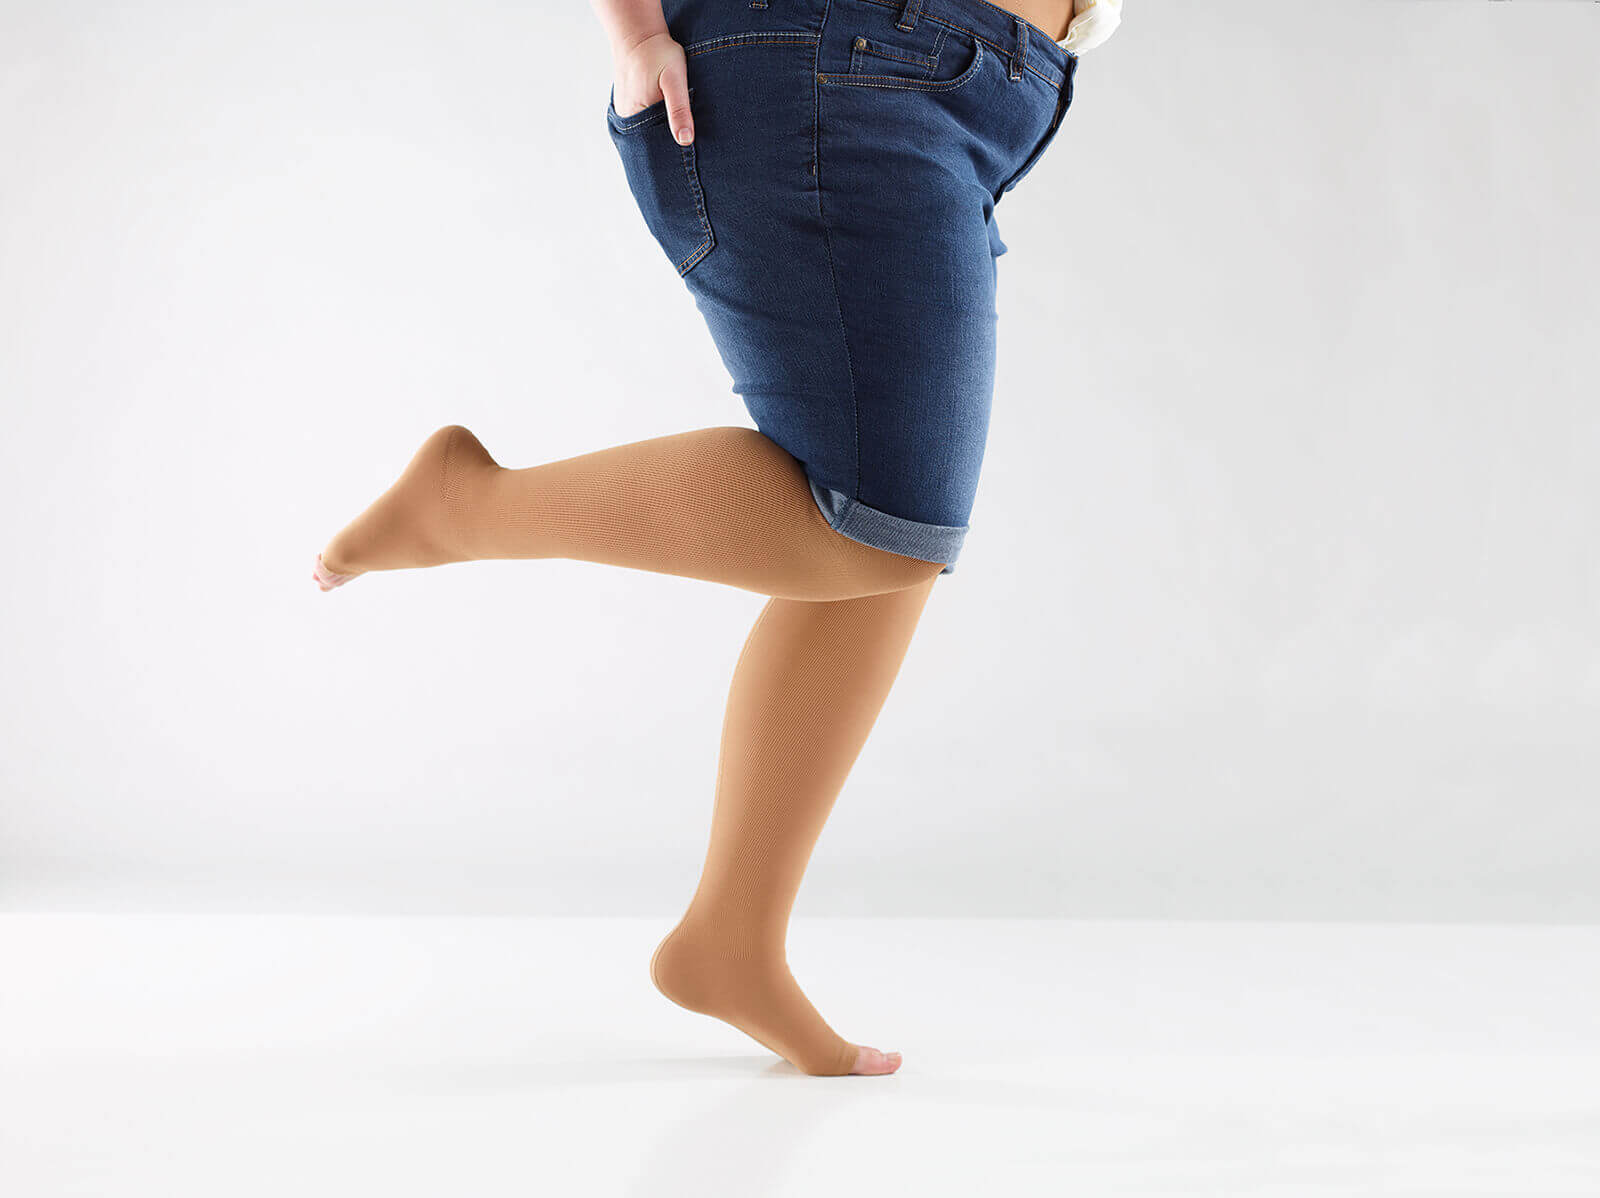 Bildausschnitt einer Frau mit kurzer Jeanshose und curaflow-Flachstrick Kompression von Bauerfeind an den Beinen.